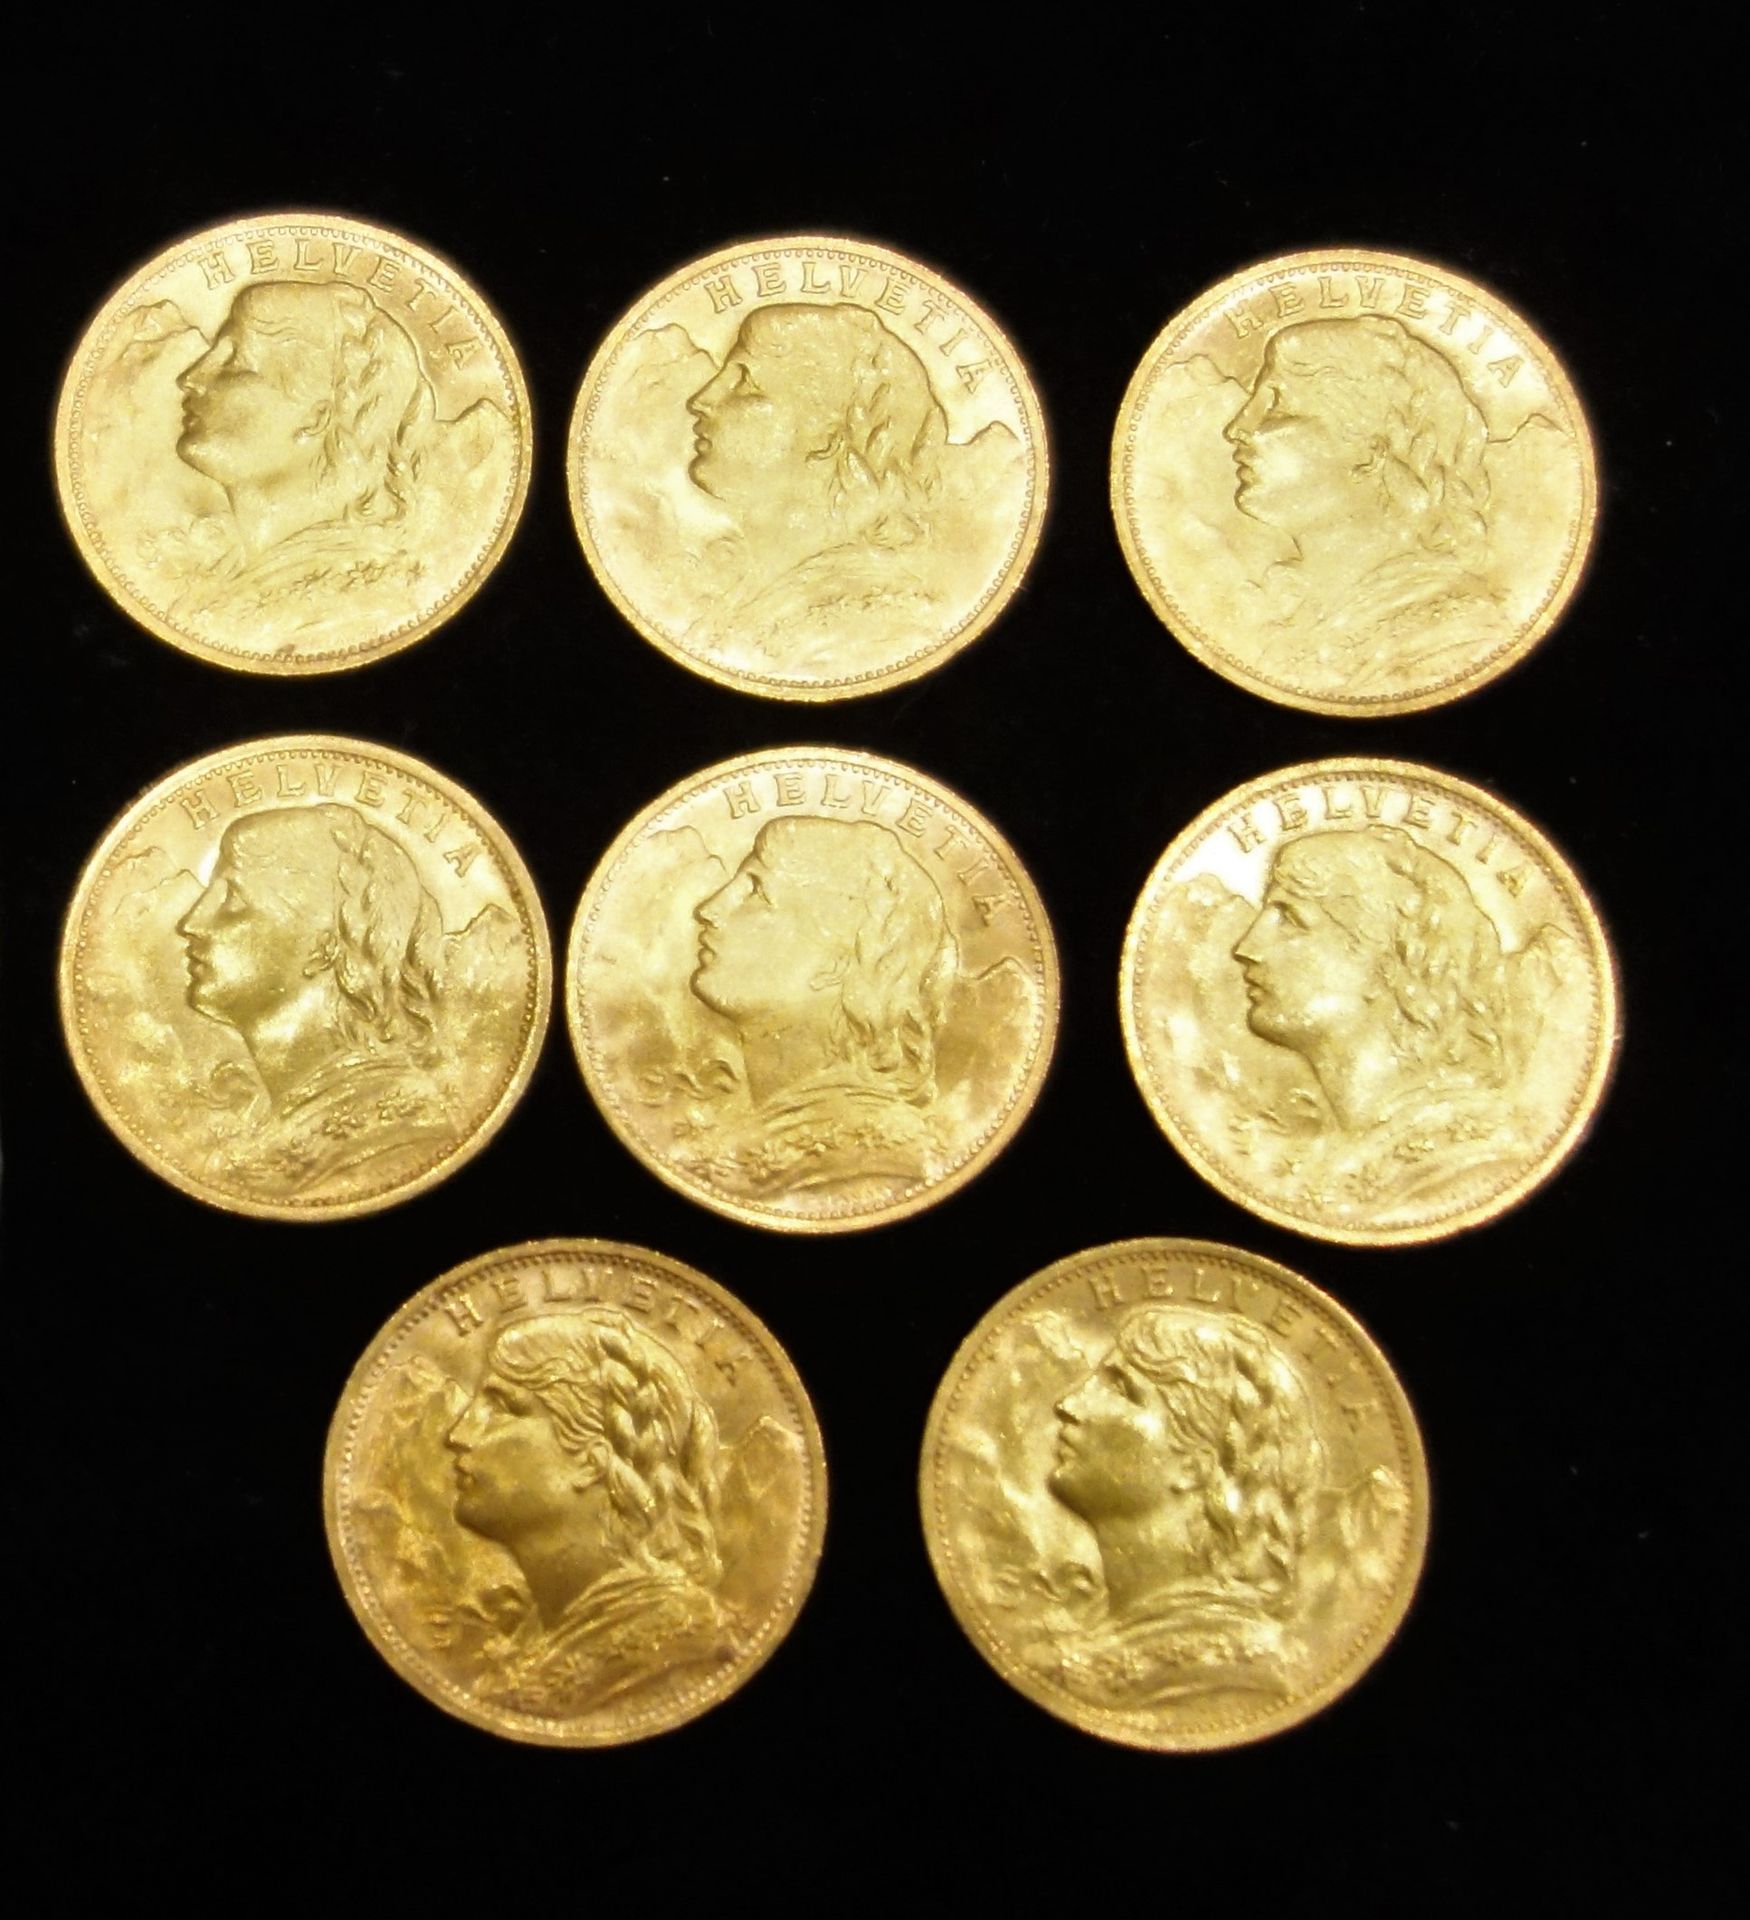 Null Otto monete d'oro svizzere da 20 F.
Peso: 51,5 g